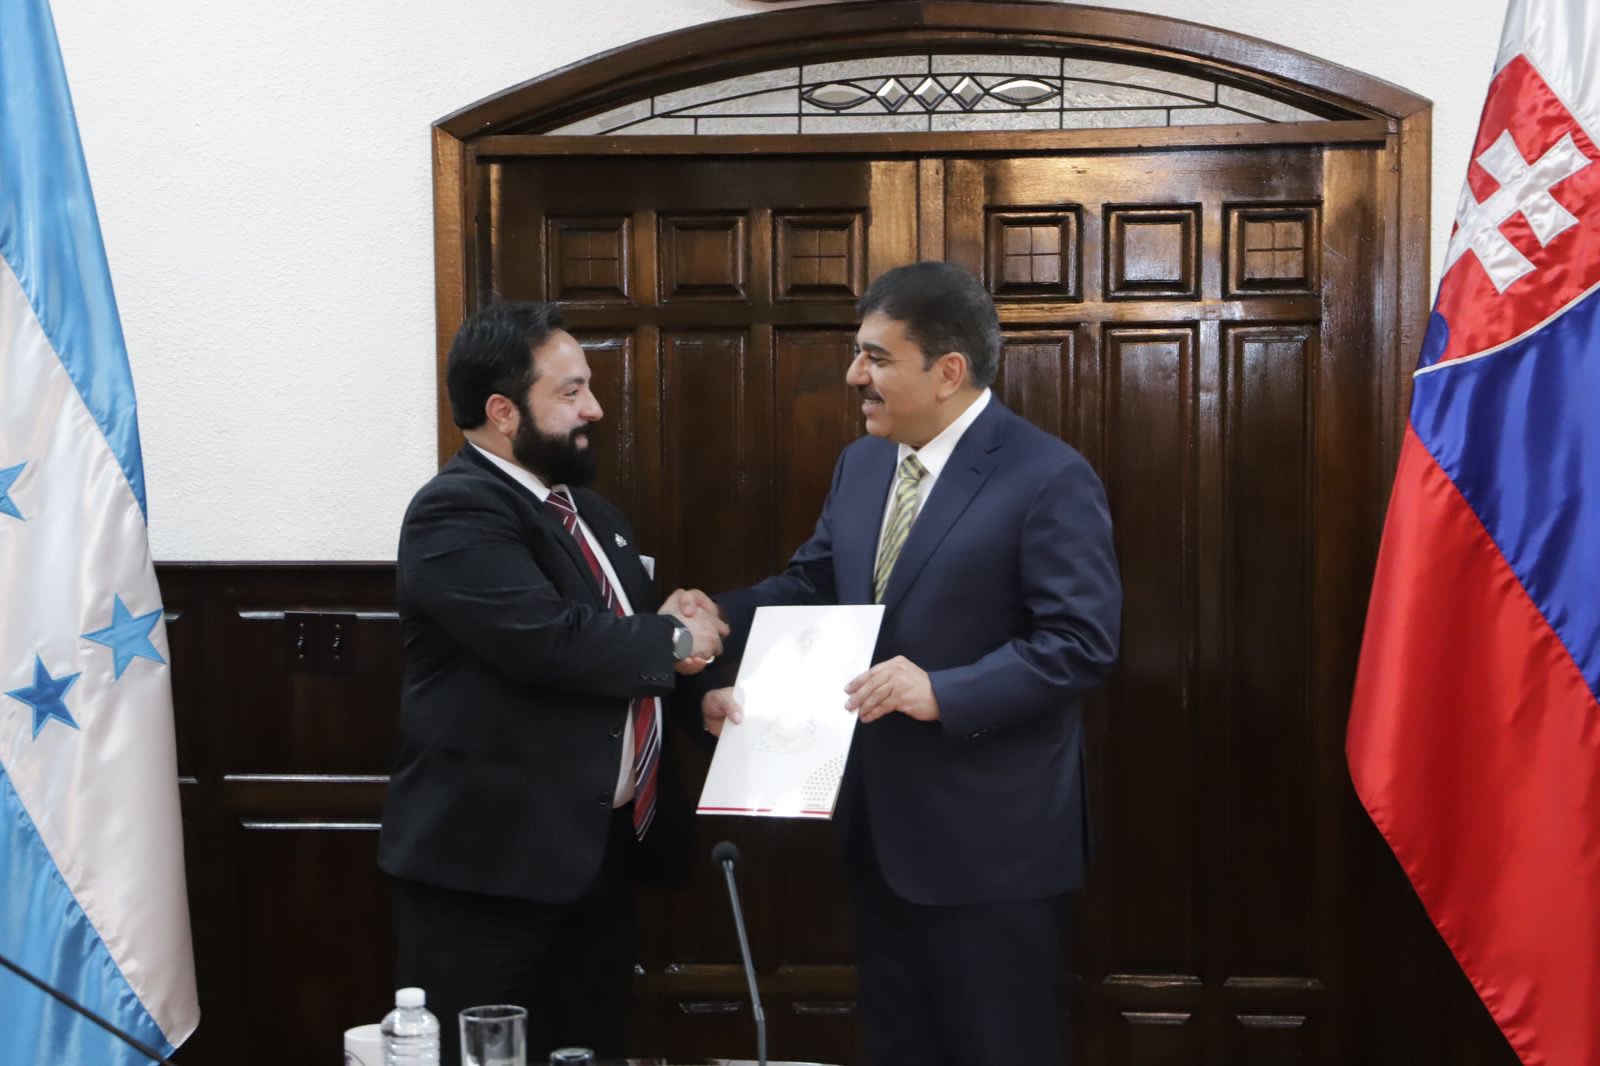 El presidente del Congreso Nacional, Luis Redondo, entregó certificación de autorización en nombre de este Poder del Estado, a la Secretaria de Relaciones Exteriores y al excelentísimo señor Jorge Alberto Faraj Faraj